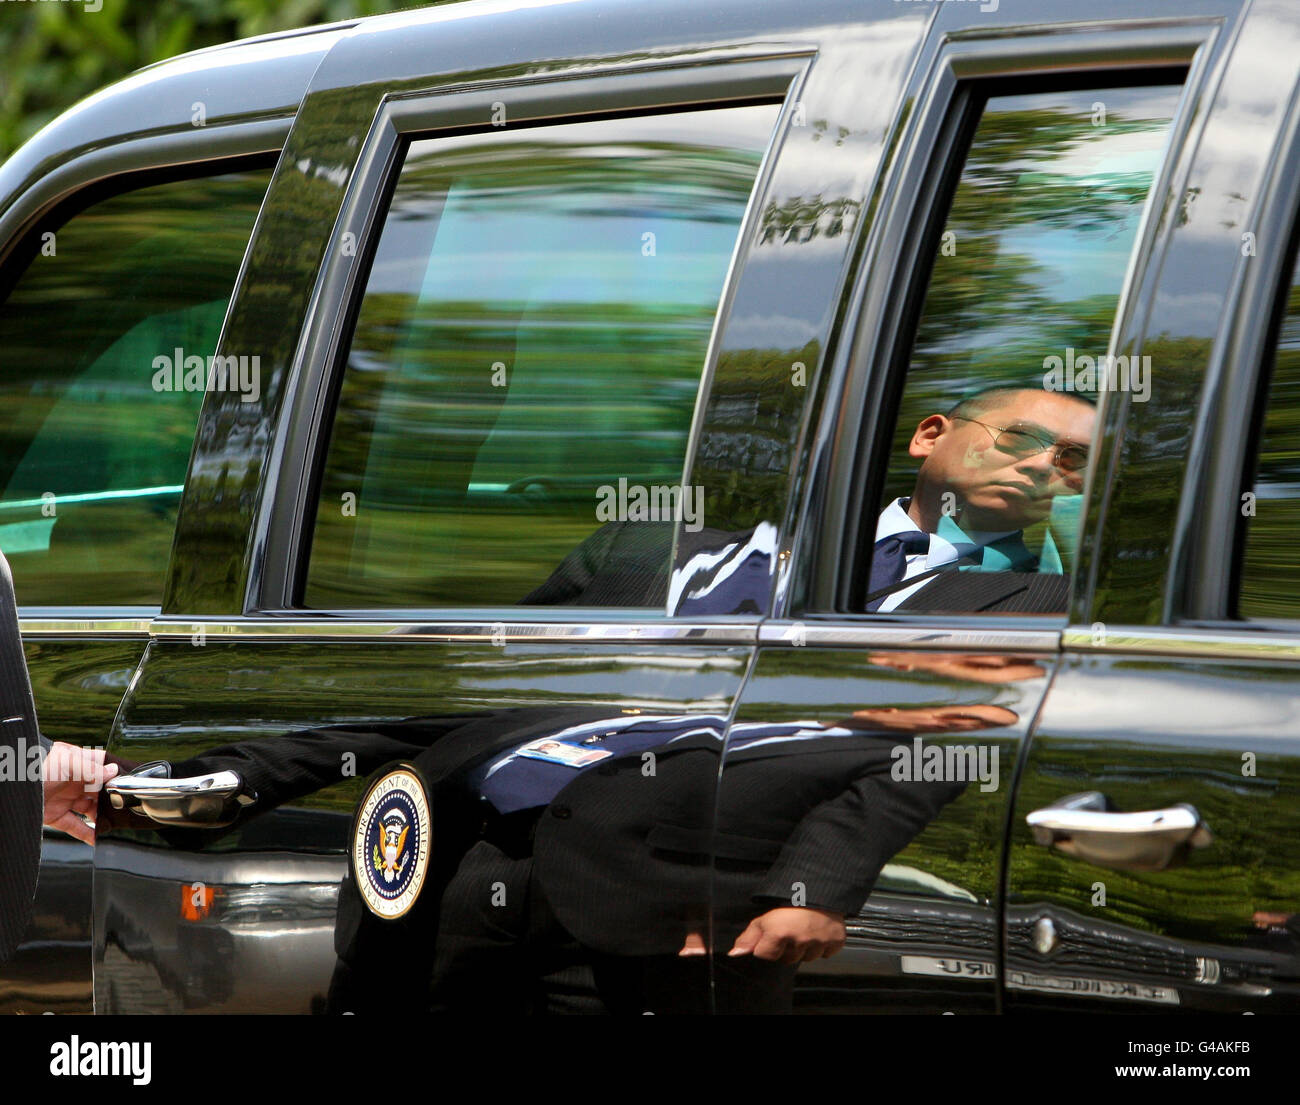 Ein Geheimagent hält im Winfield House, dem offiziellen Wohnsitz des US-Botschafters, im Regent's Park im Zentrum von London die Tür des Autos von US-Präsident Barack Obama, bekannt als "das Tier". Stockfoto